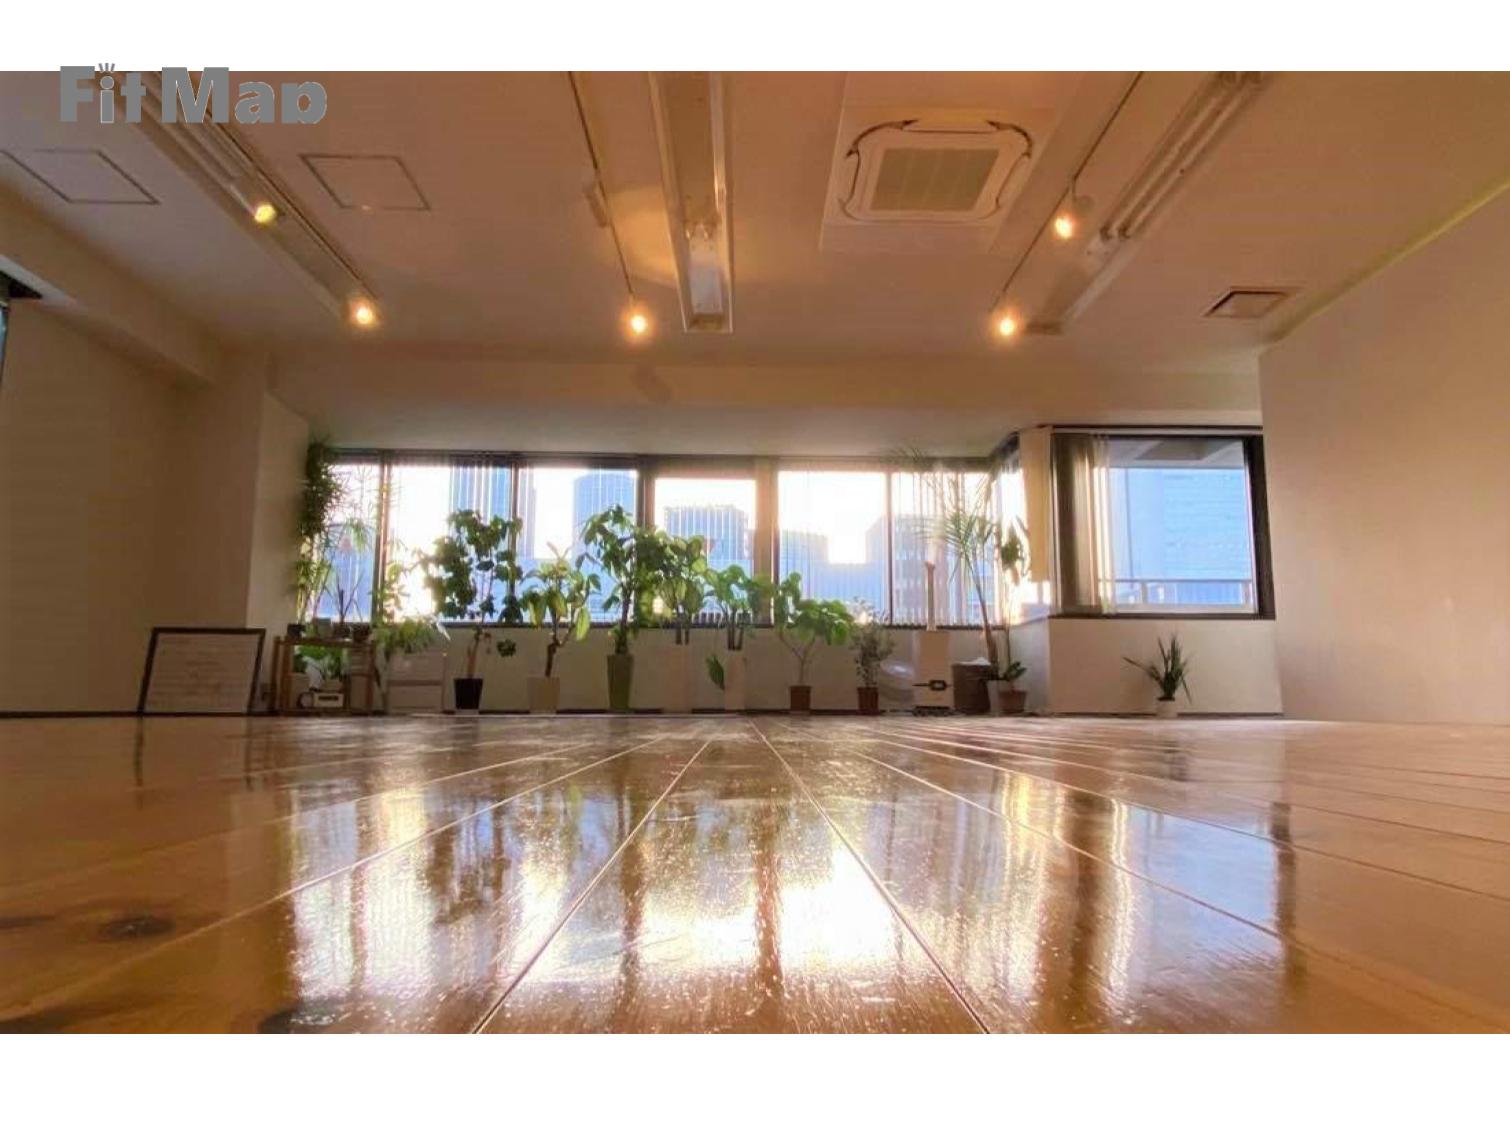 haano yoga studio（ハーノヨガスタジオ）の施設画像